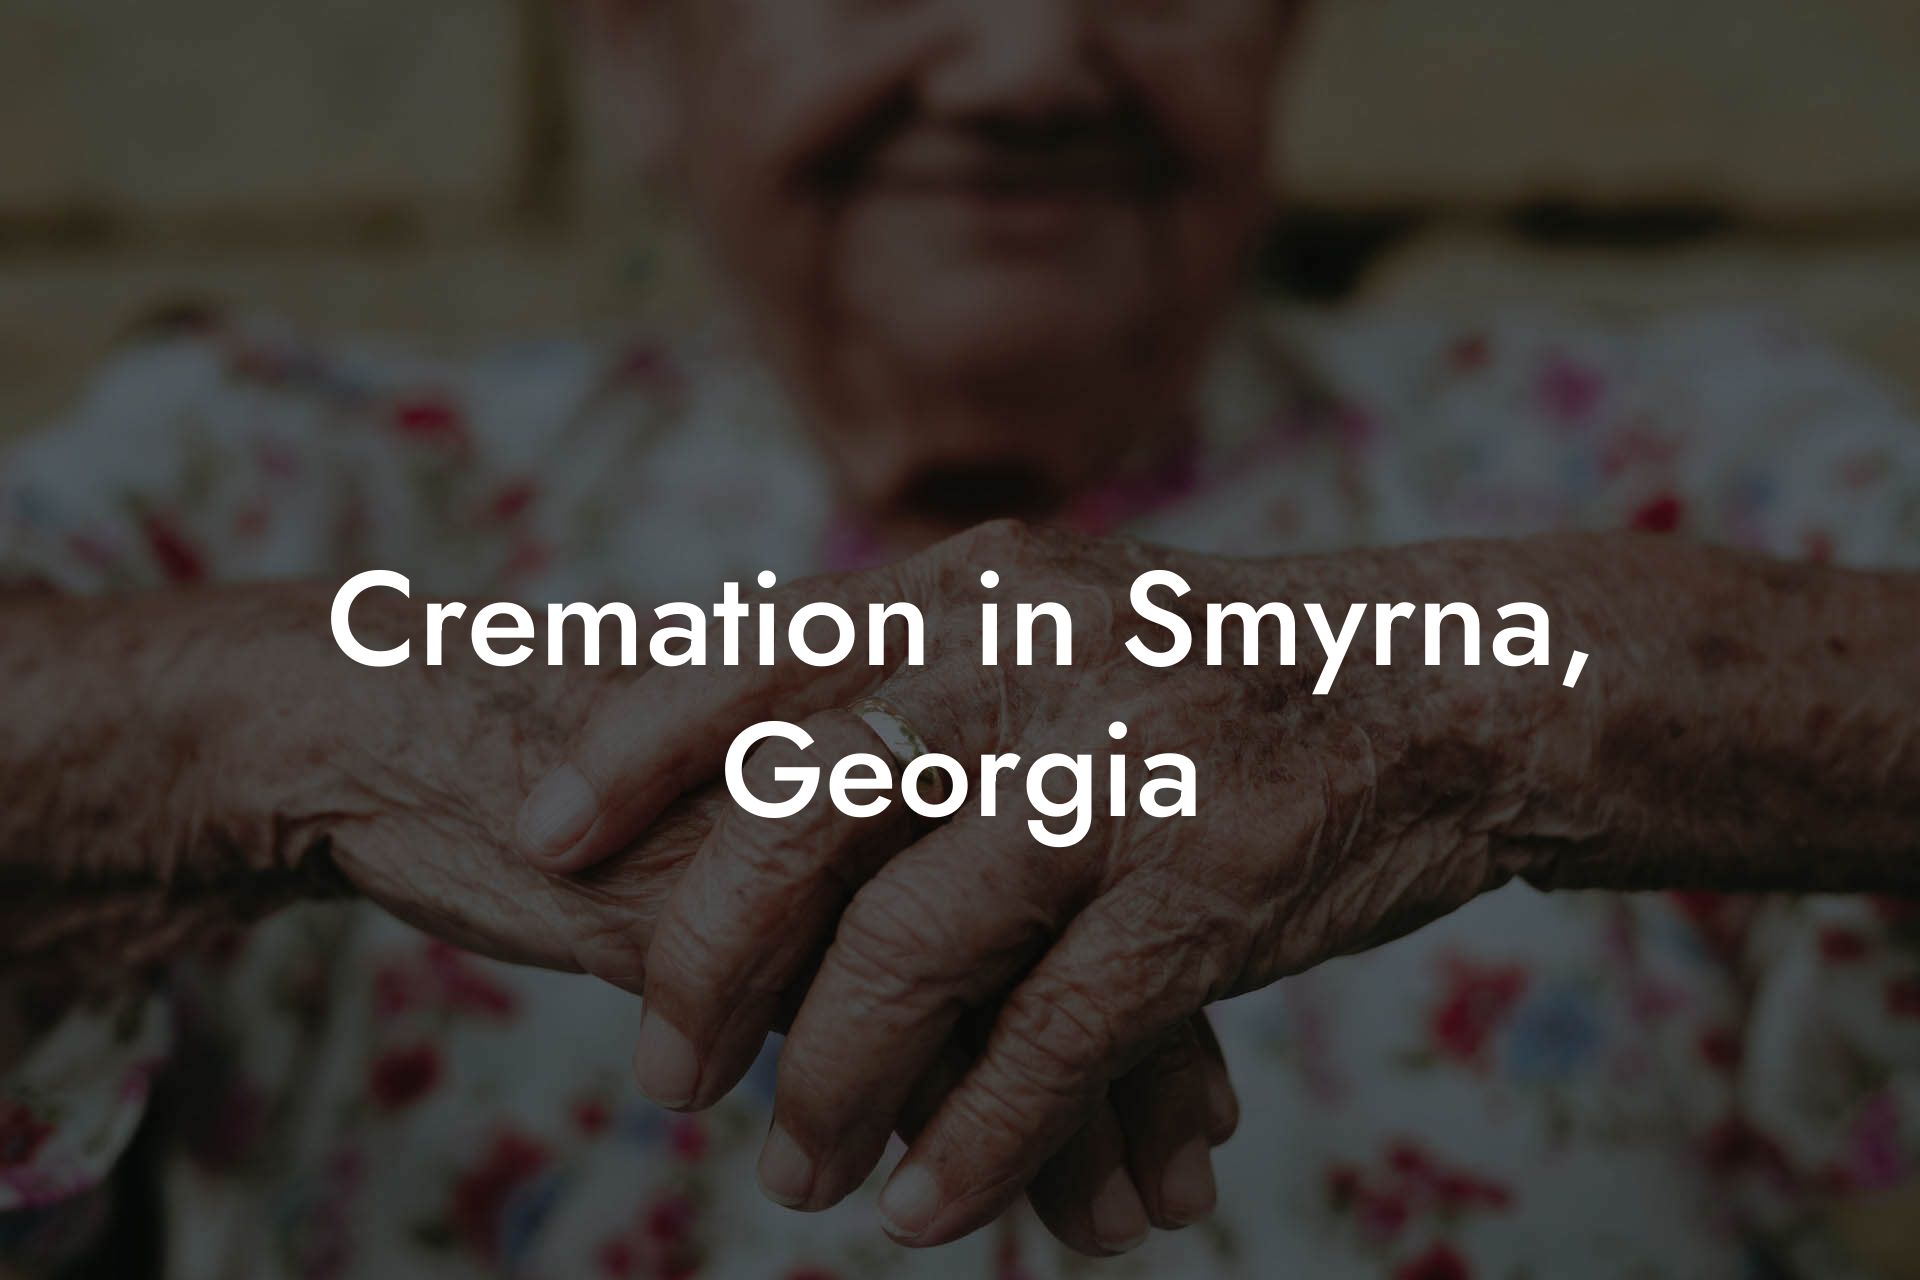 Cremation in Smyrna, Georgia